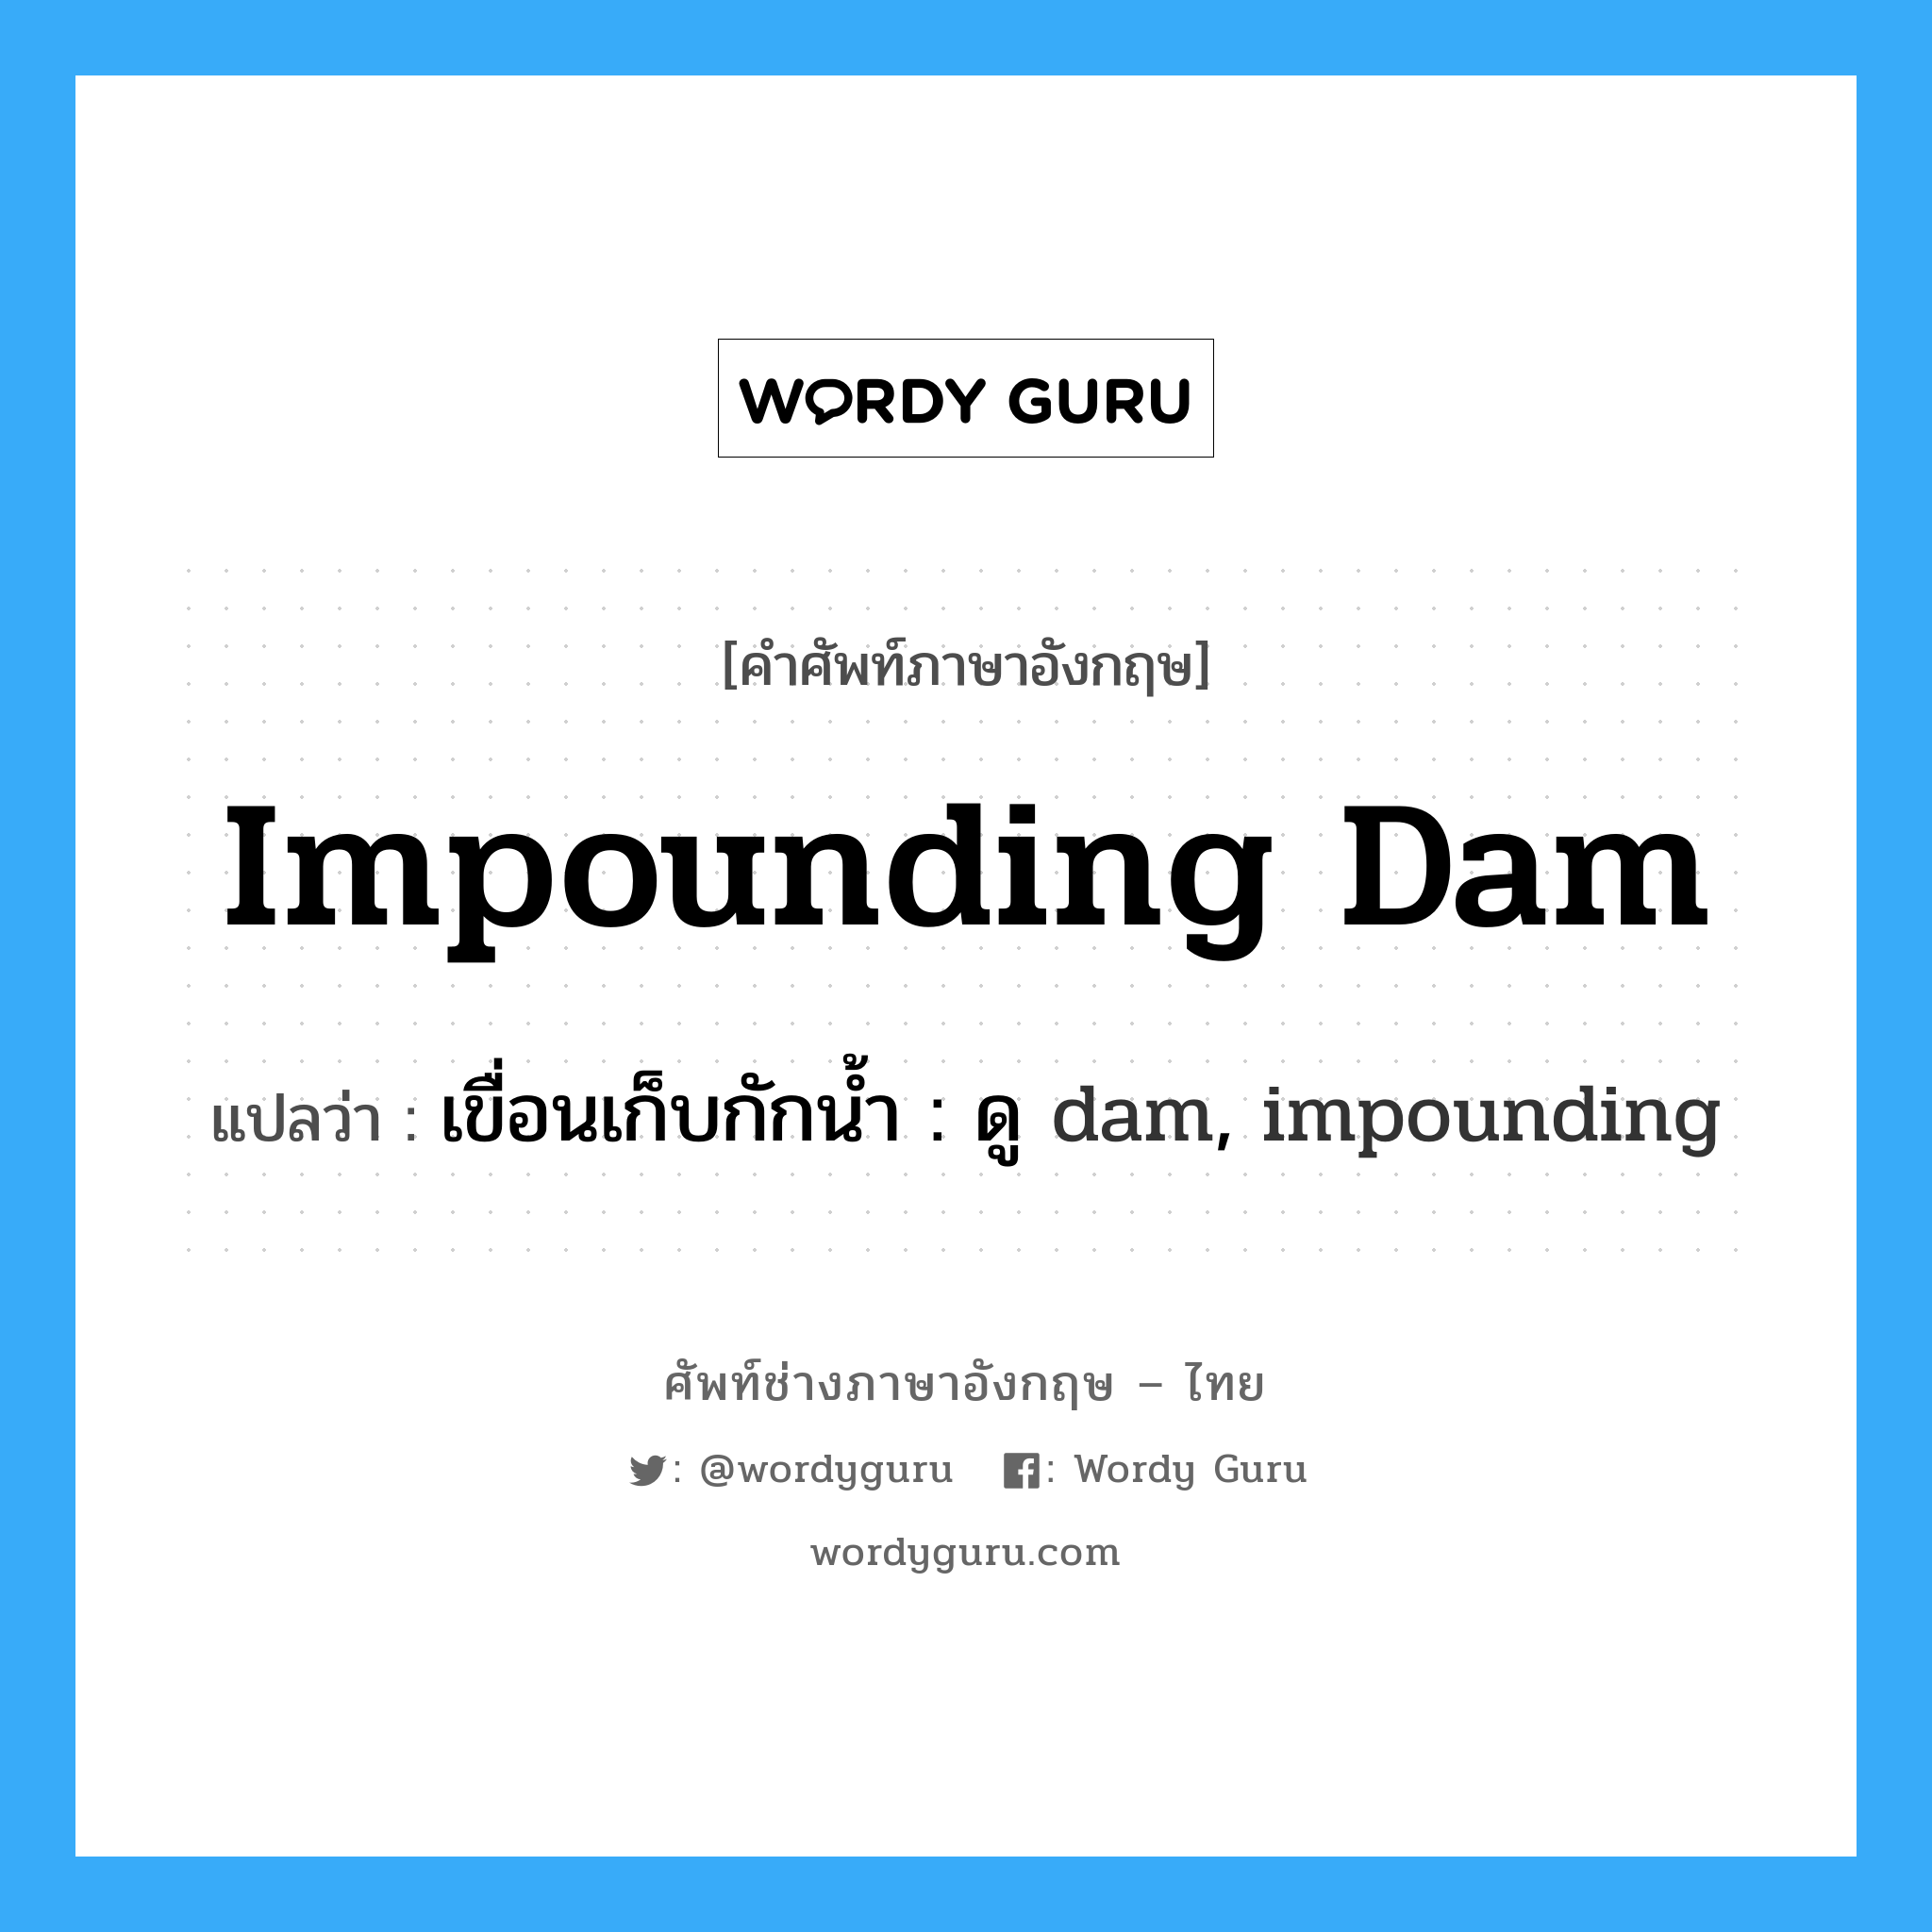 เขื่อนเก็บกักน้ำ : ดู dam, impounding ภาษาอังกฤษ?, คำศัพท์ช่างภาษาอังกฤษ - ไทย เขื่อนเก็บกักน้ำ : ดู dam, impounding คำศัพท์ภาษาอังกฤษ เขื่อนเก็บกักน้ำ : ดู dam, impounding แปลว่า impounding dam